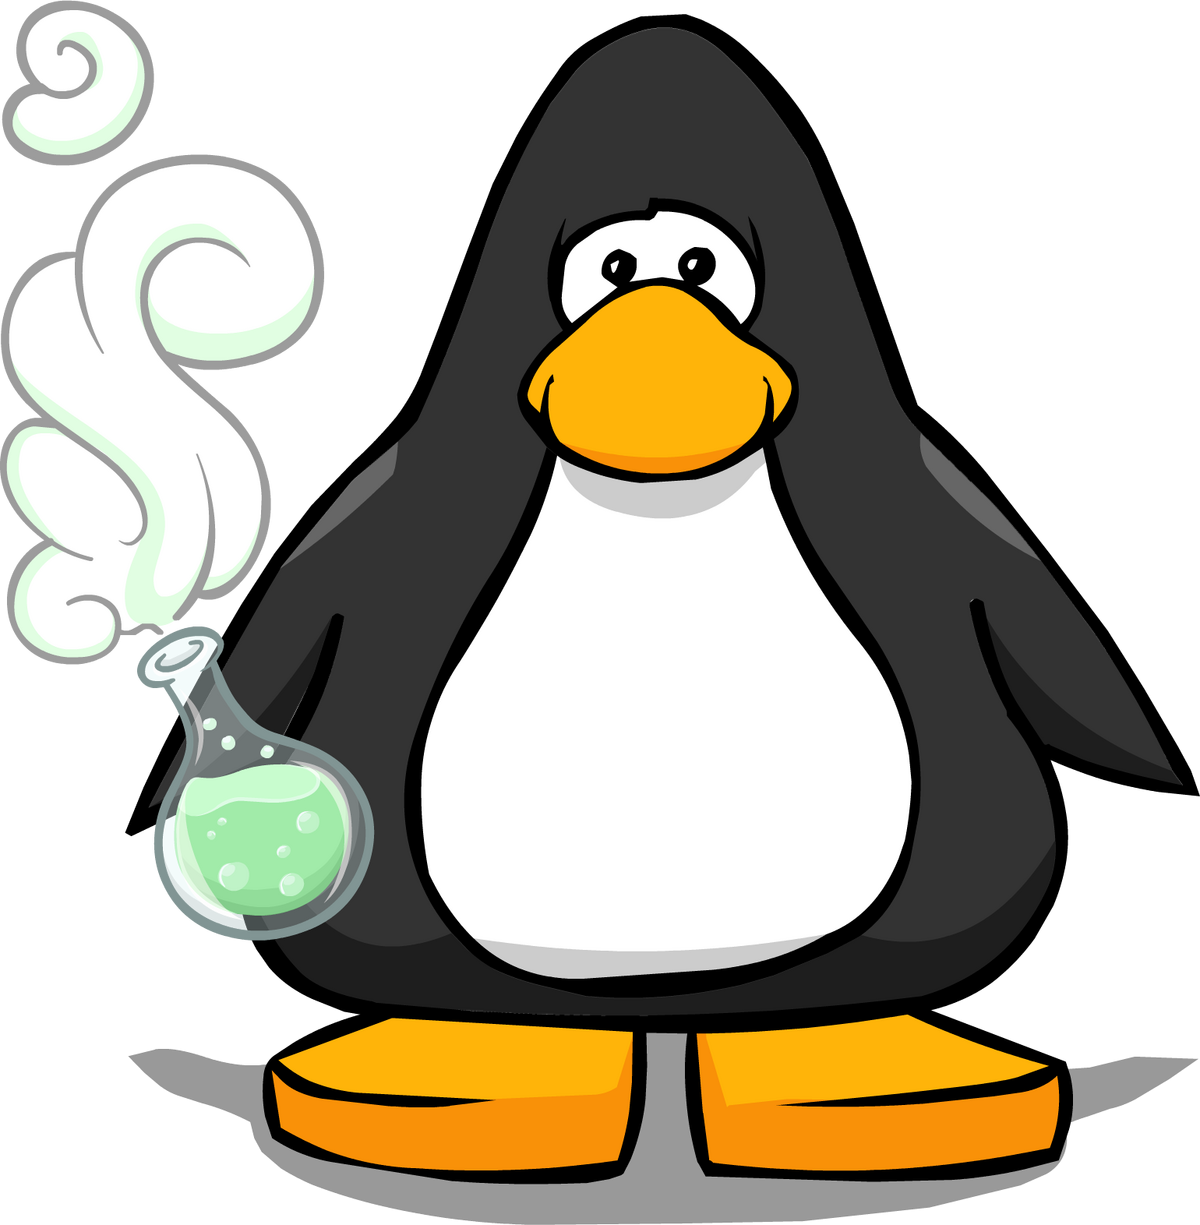 Puff Penguins Club - Magic Eden